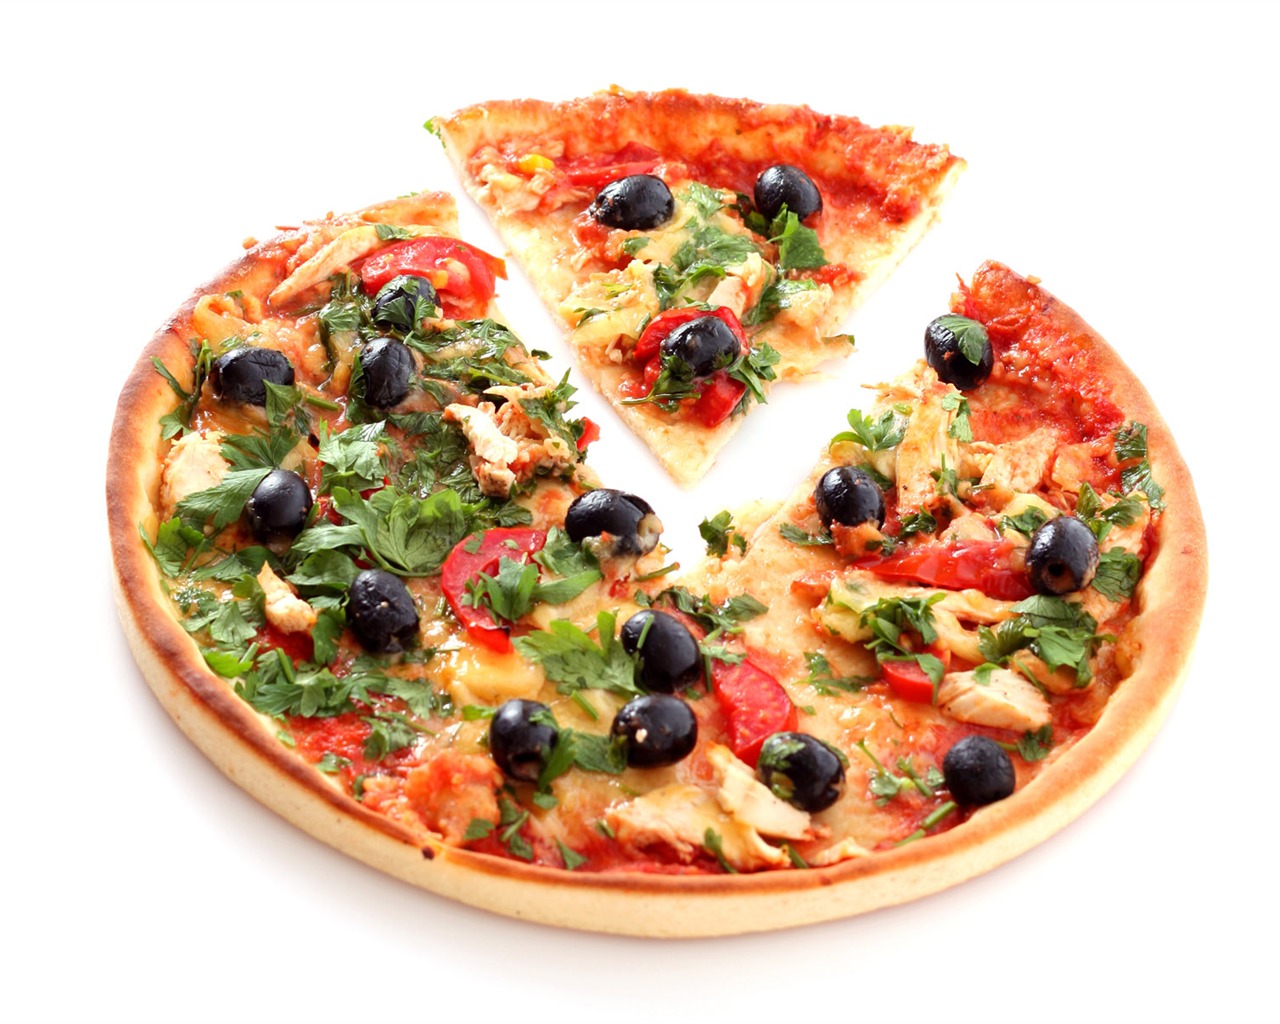 Fondos de pizzerías de Alimentos (4) #5 - 1280x1024